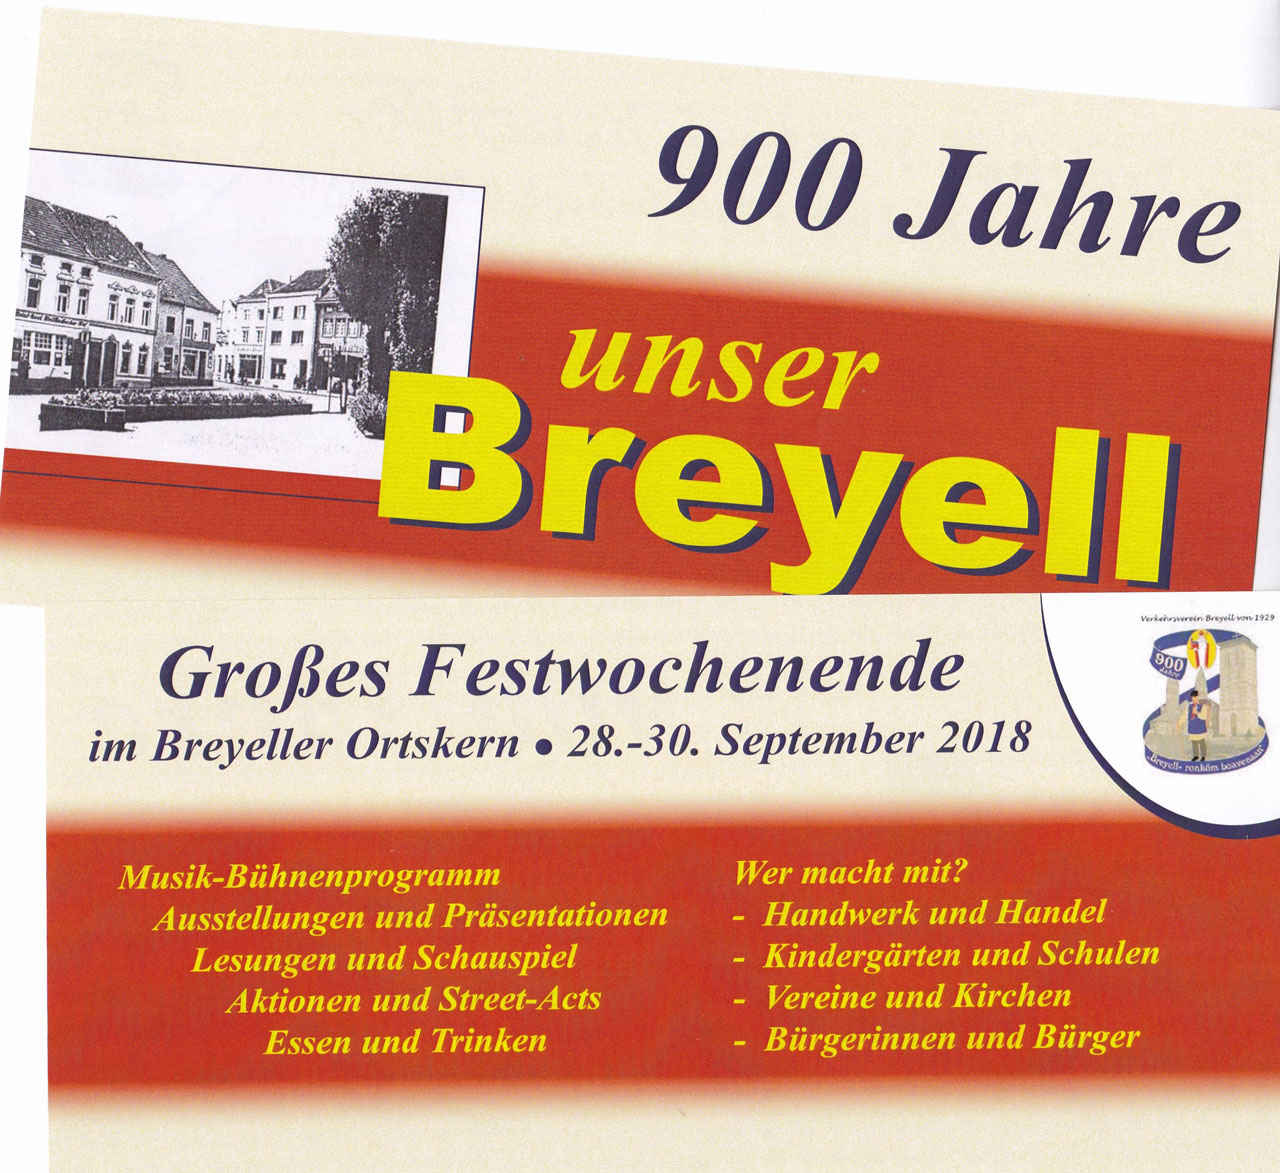 900 Jahre - unser Breyell